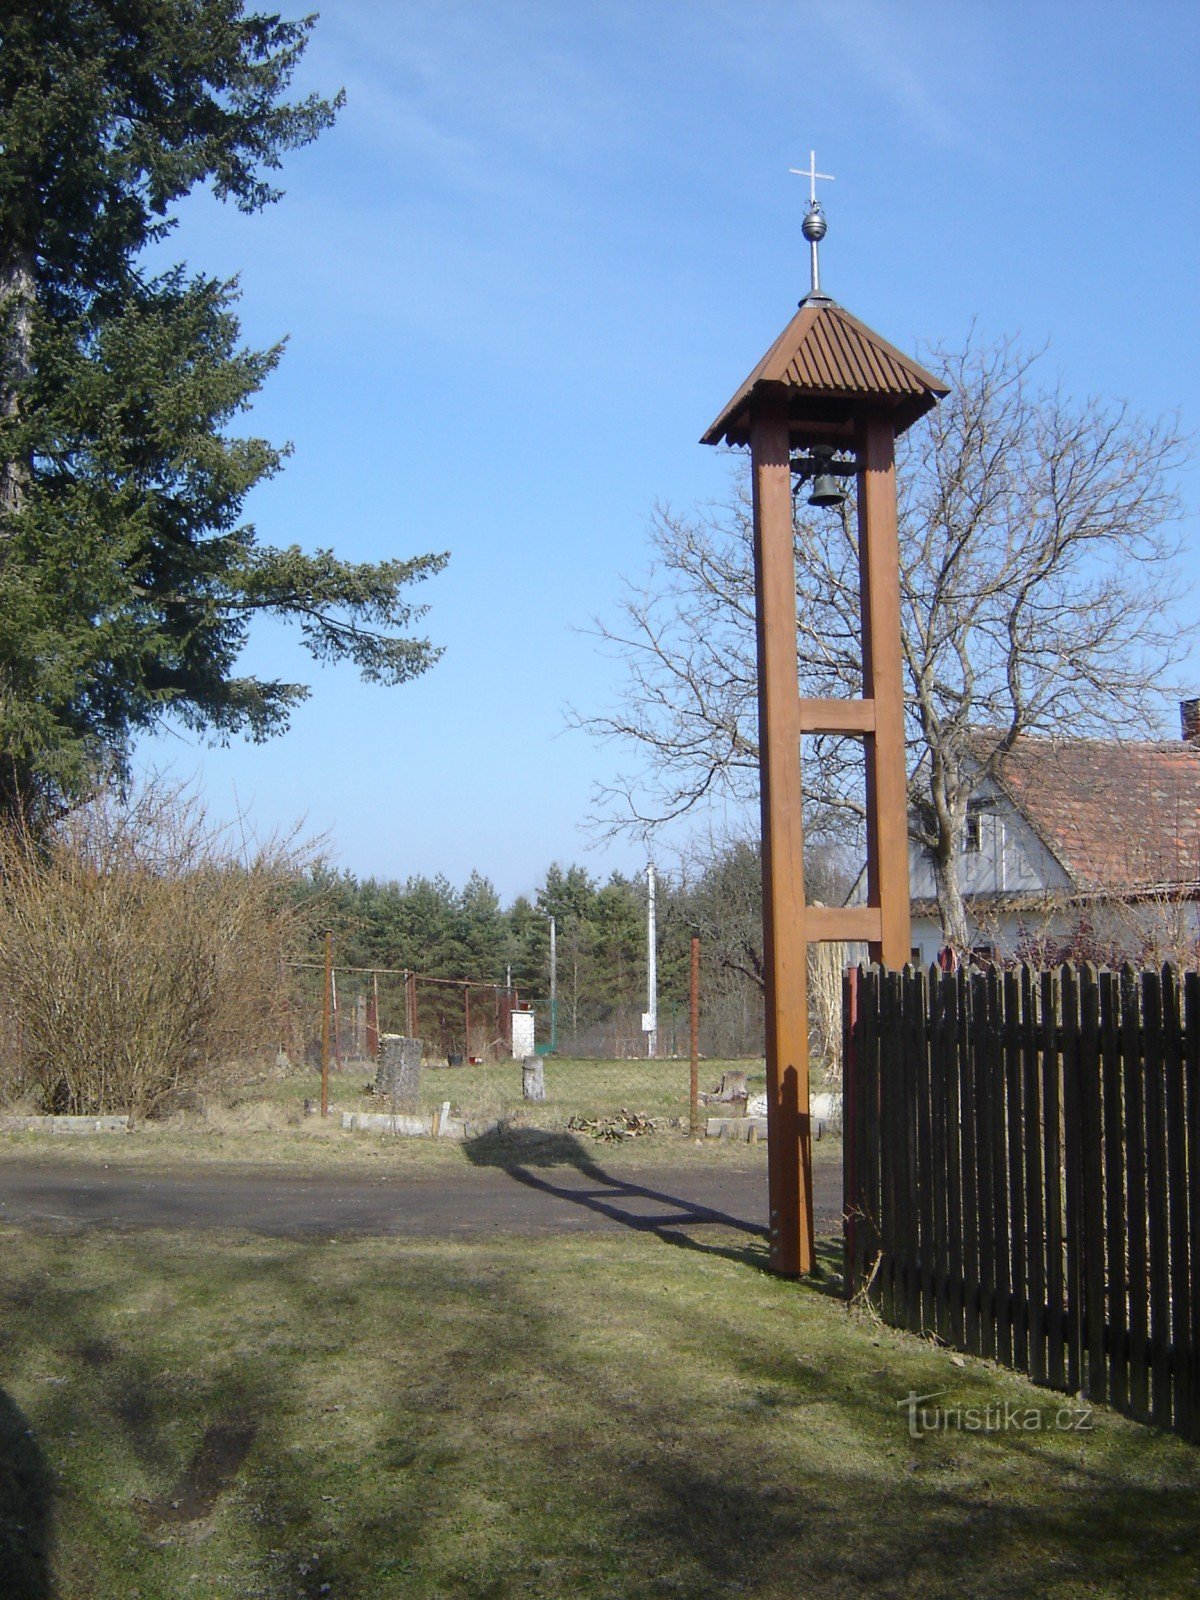 bell tower on Větrov